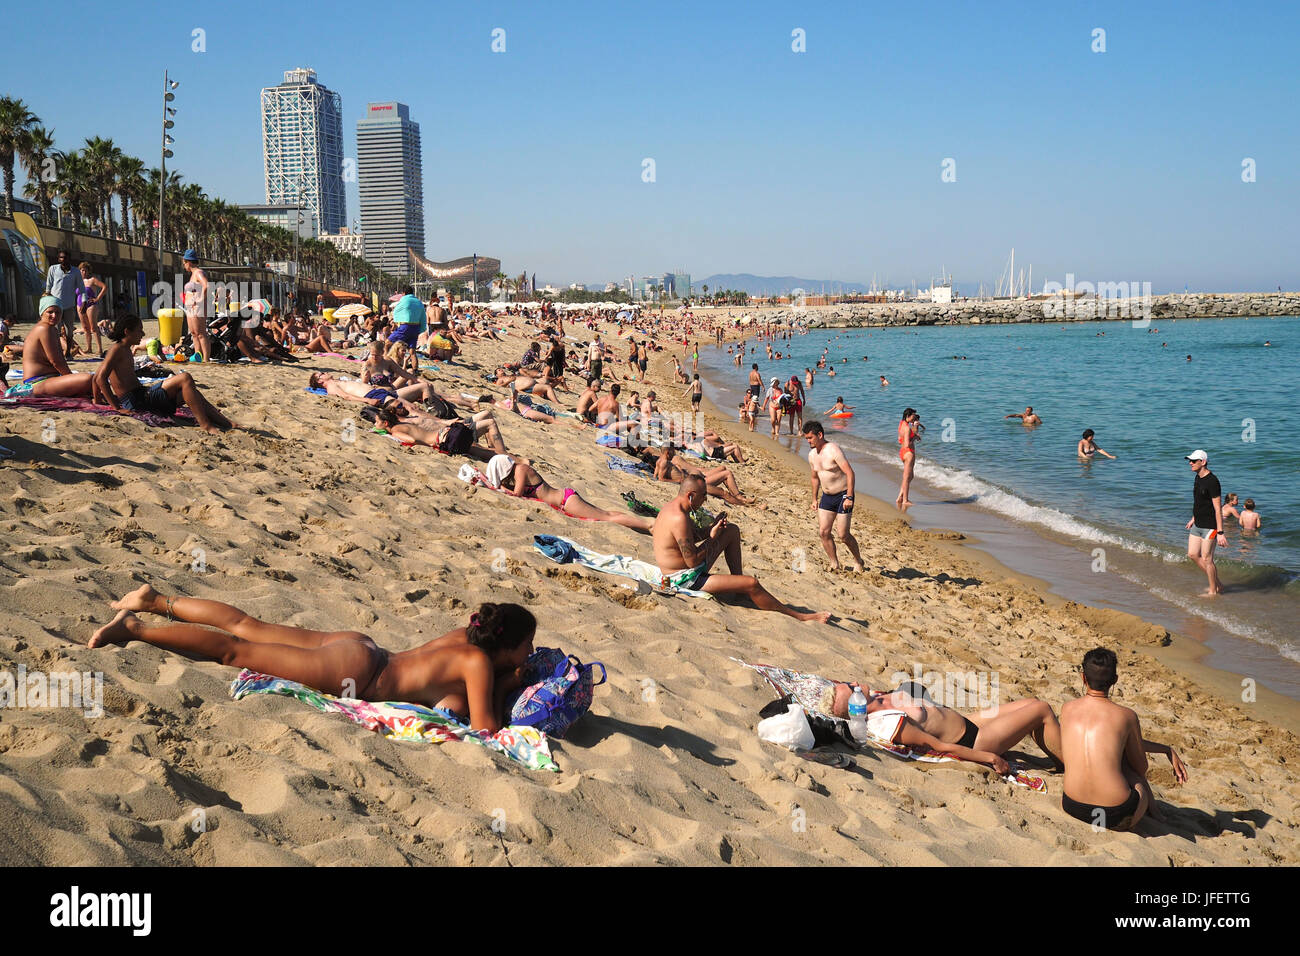 Des foules de gens en train de bronzer sur la plage de Barceloneta ; sur les gratte-ciel en arrière-plan l'hôtel Arts et la Tour Mapfre, Vila Olimpica et Port Olimpic Banque D'Images